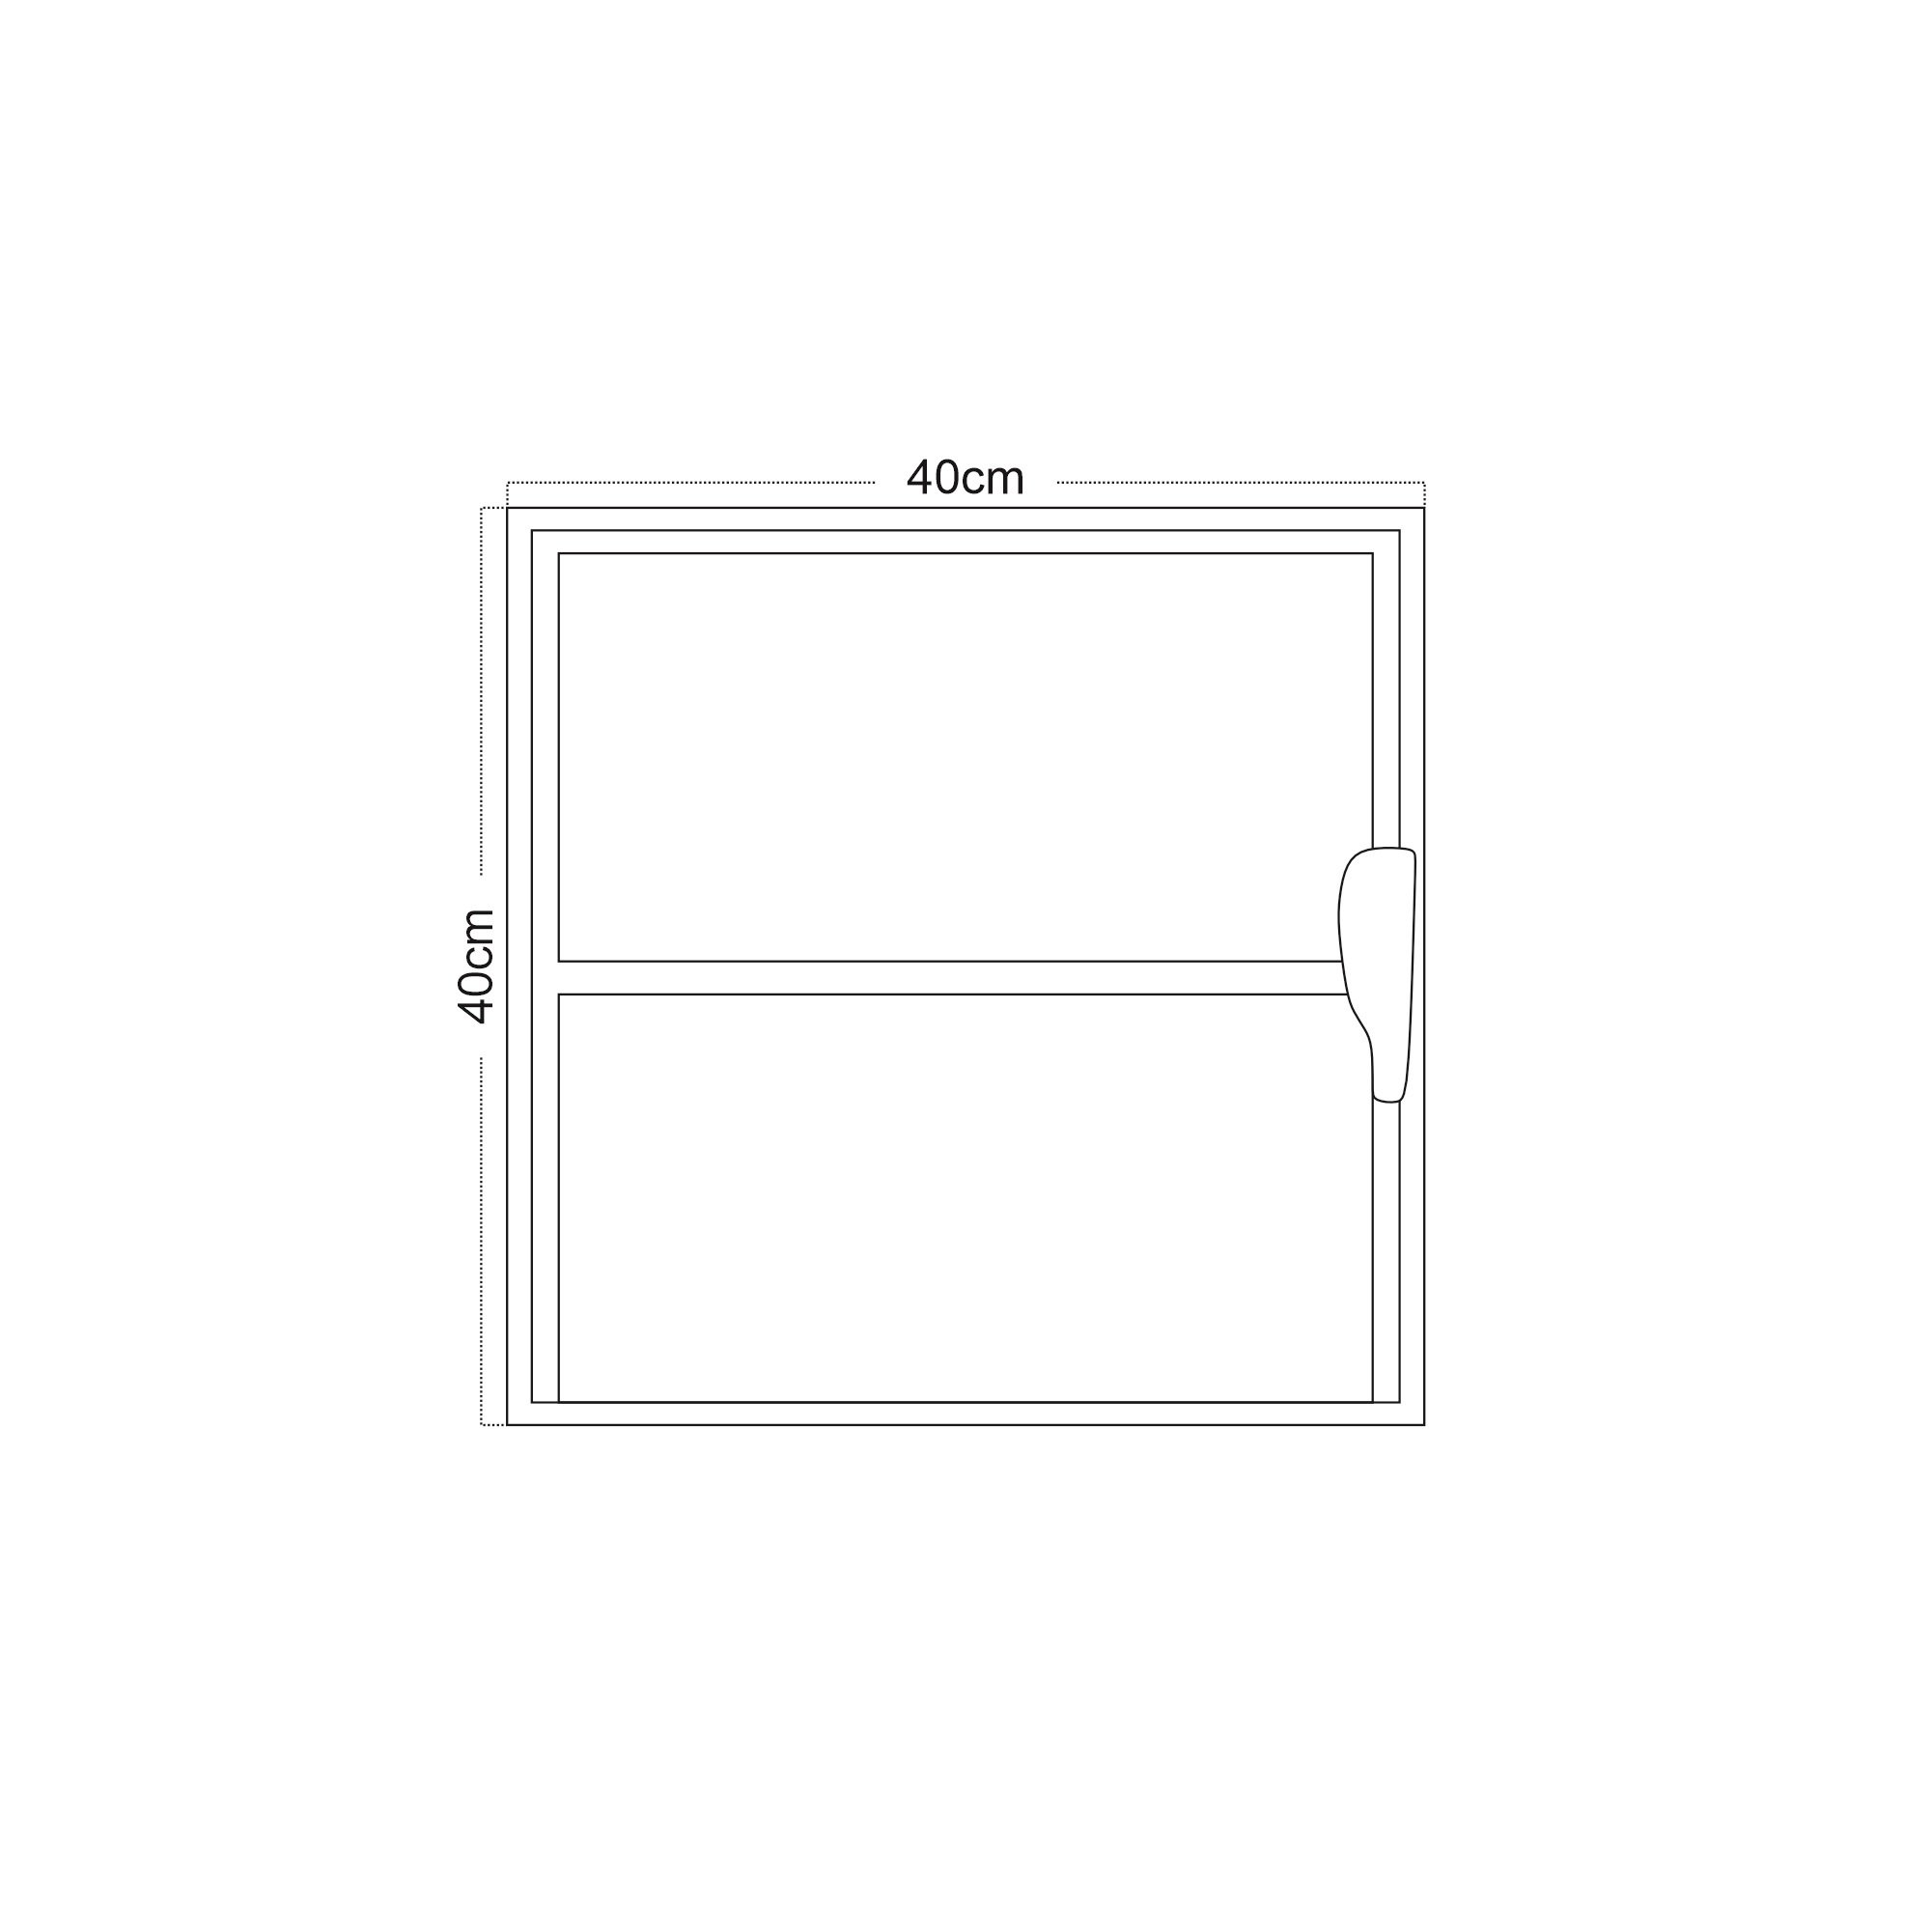 Janela de Alumínio Basculante 40x40cm com 1 Bascula e Vidro Mini Boreal Soft MGM Branco - 5